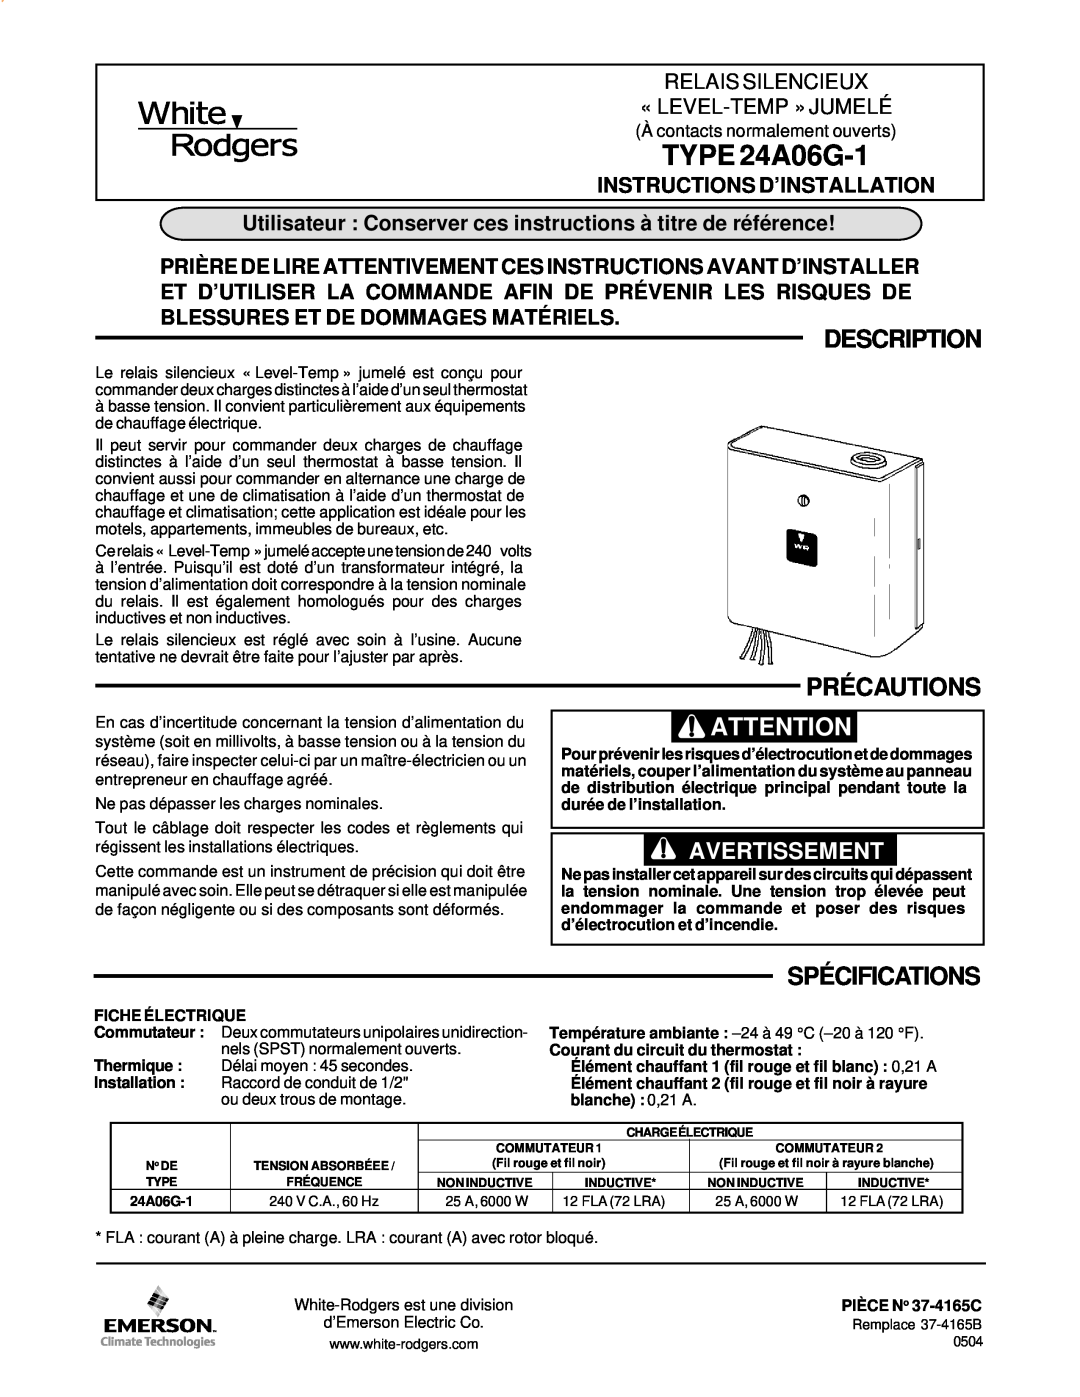 White Rodgers specifications Description, Précautions, Spécifications, TYPE 24A06G-1, Avertissement 